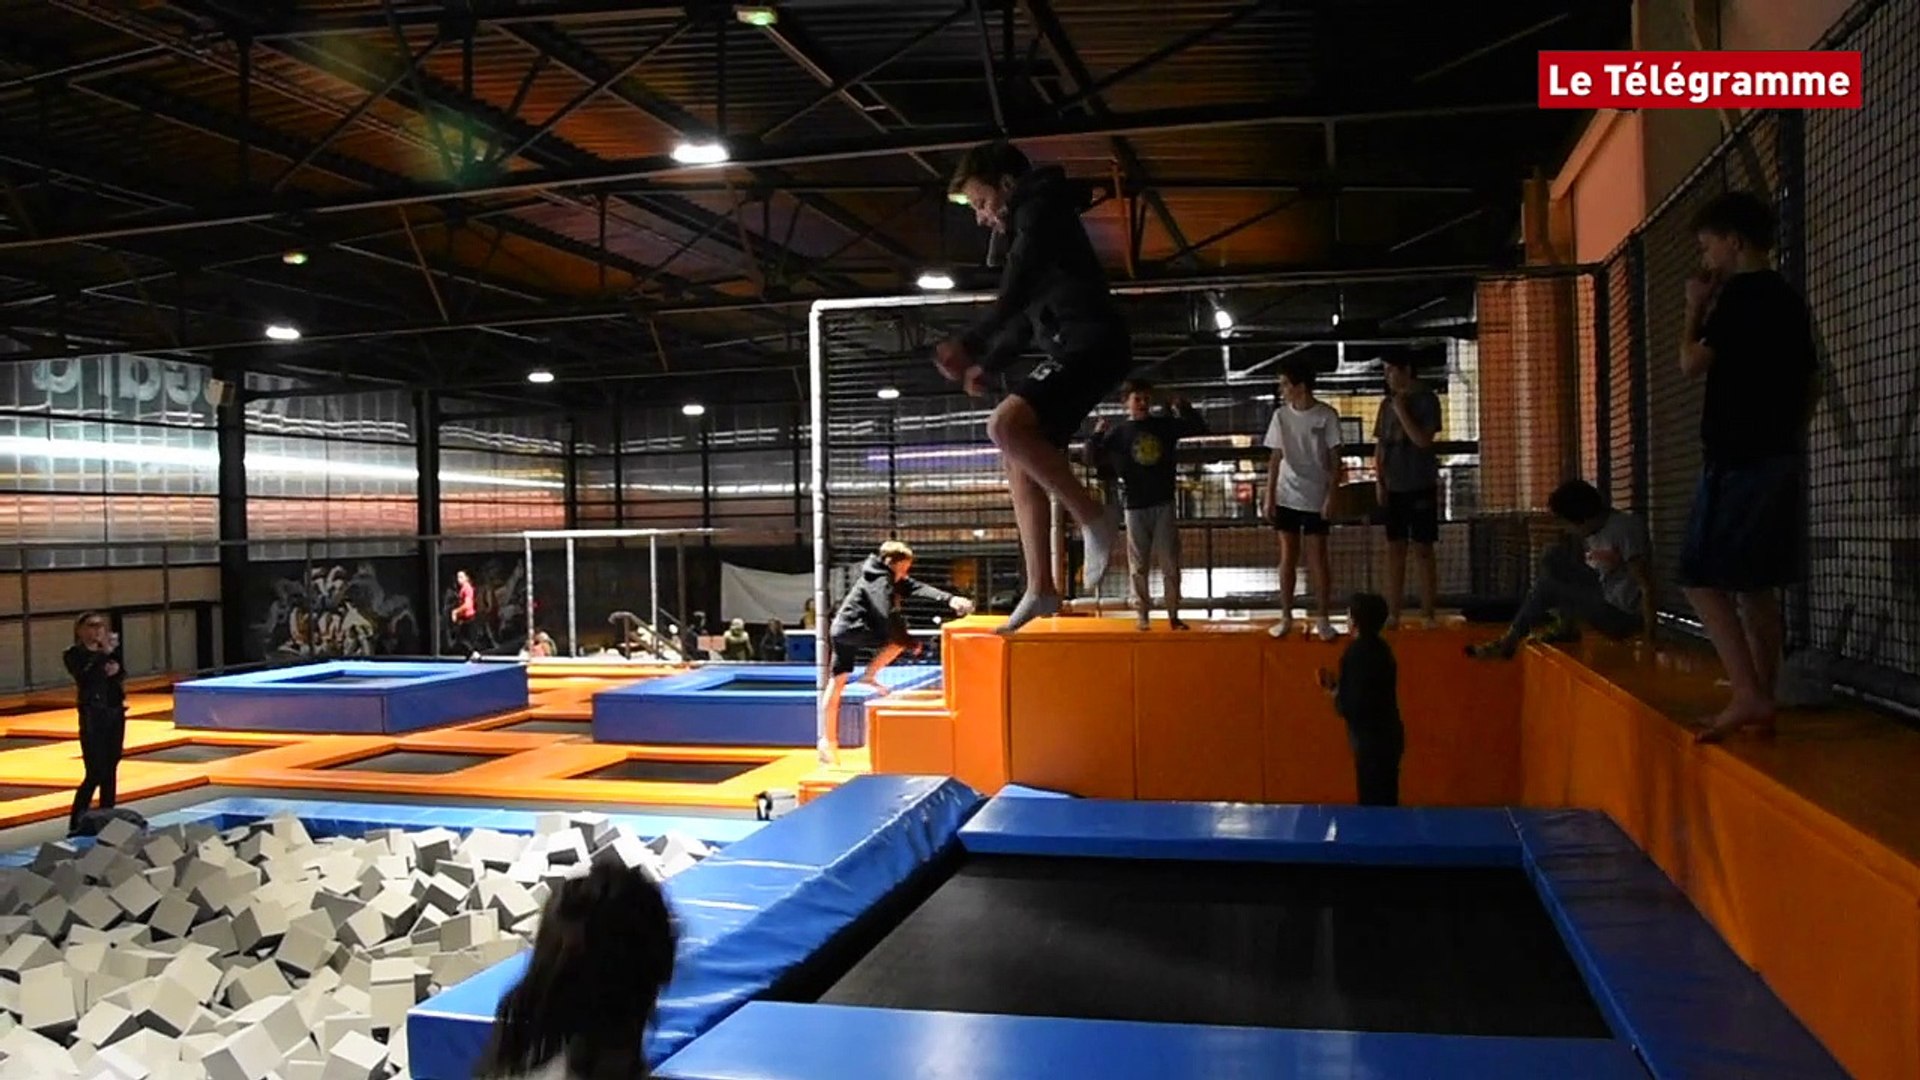 Vannes. Le trampoline park inauguré - Vidéo Dailymotion